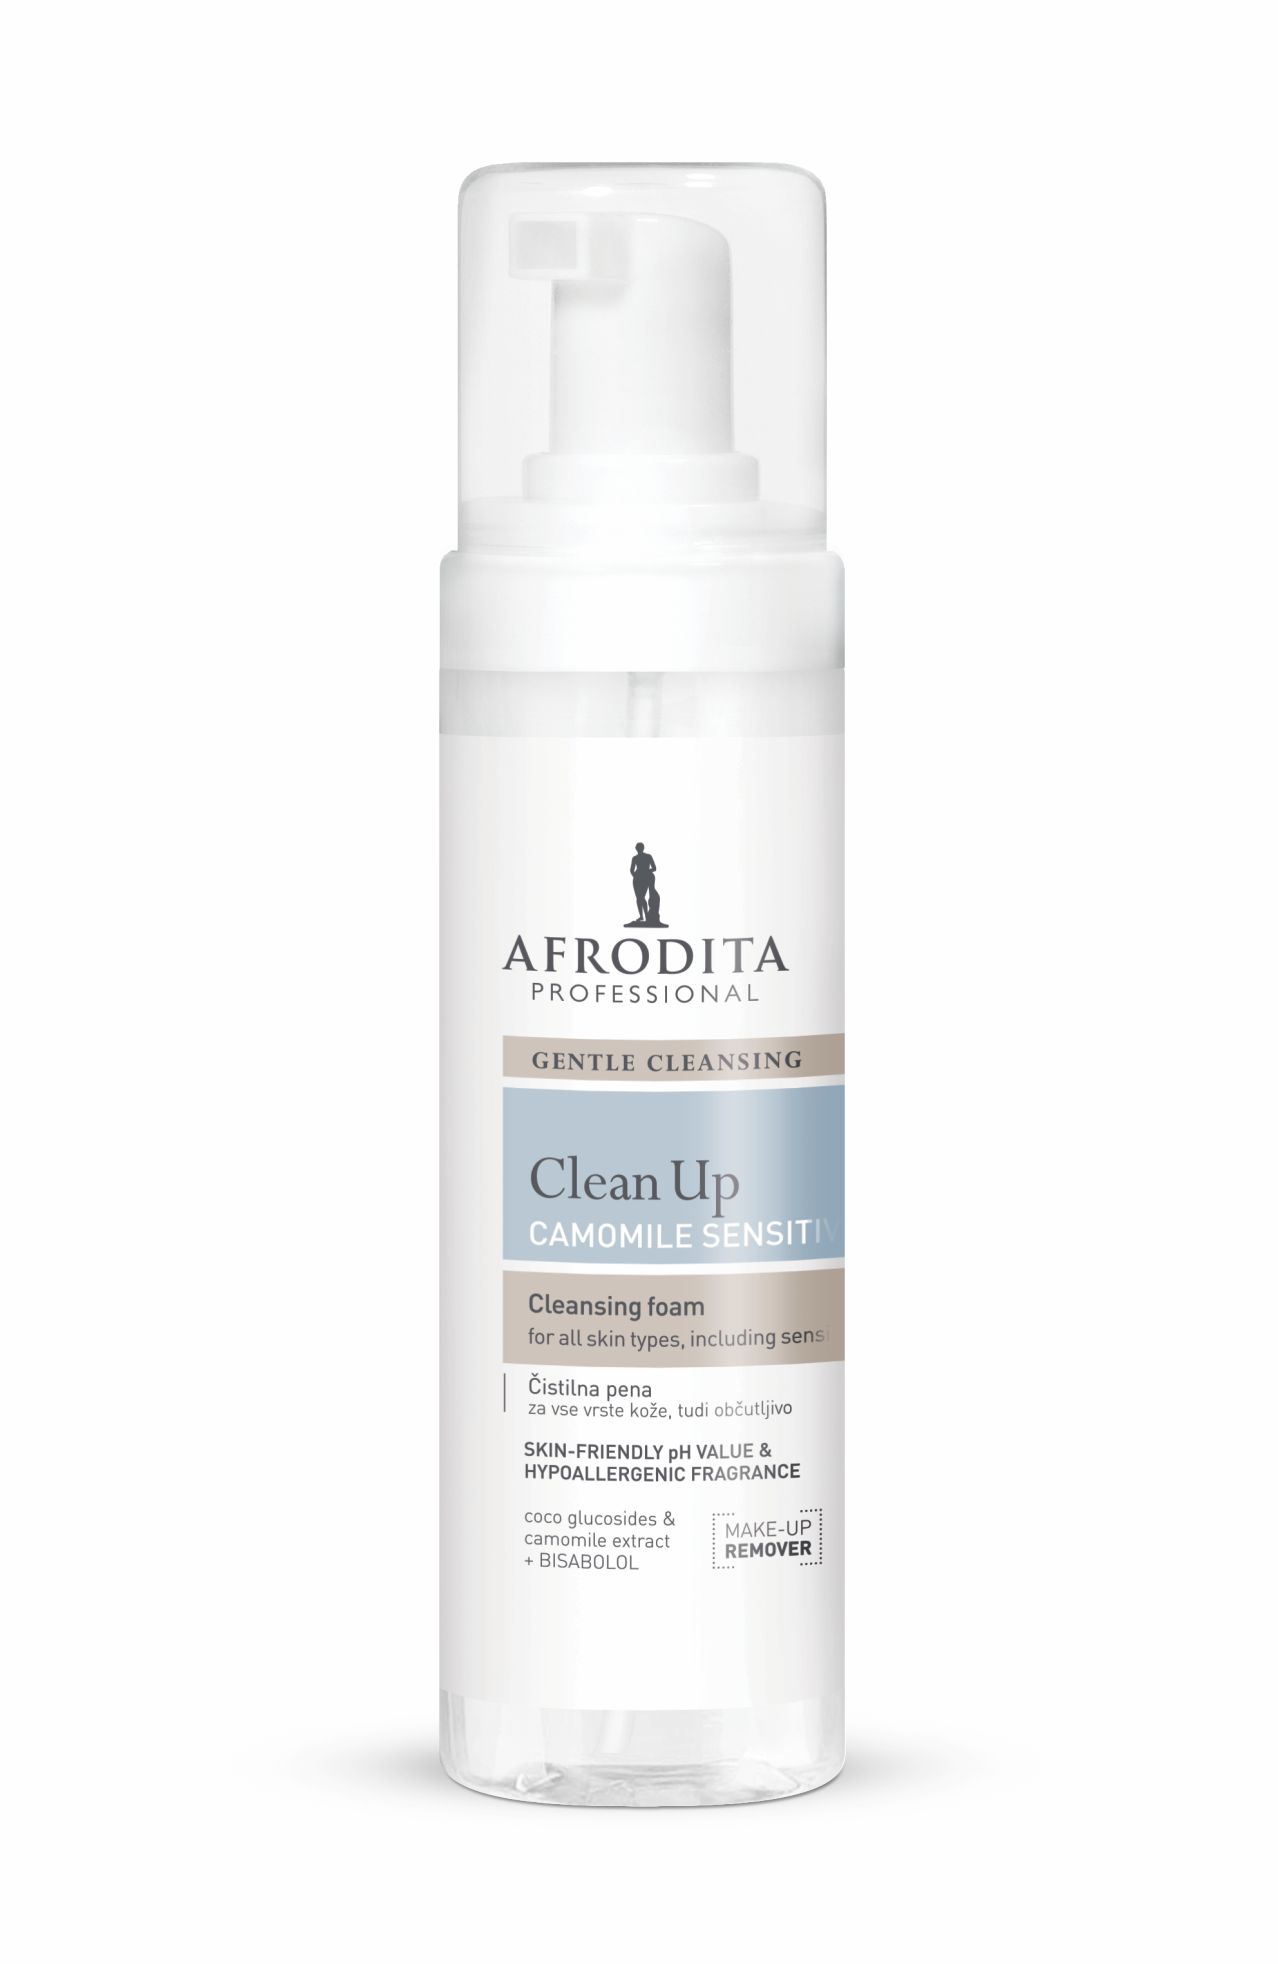 Kozmetika Afrodita - Clean Up - Pianka oczyszczająca Camomile Sensitive do skóry suchej i wrażliwej 200 ml